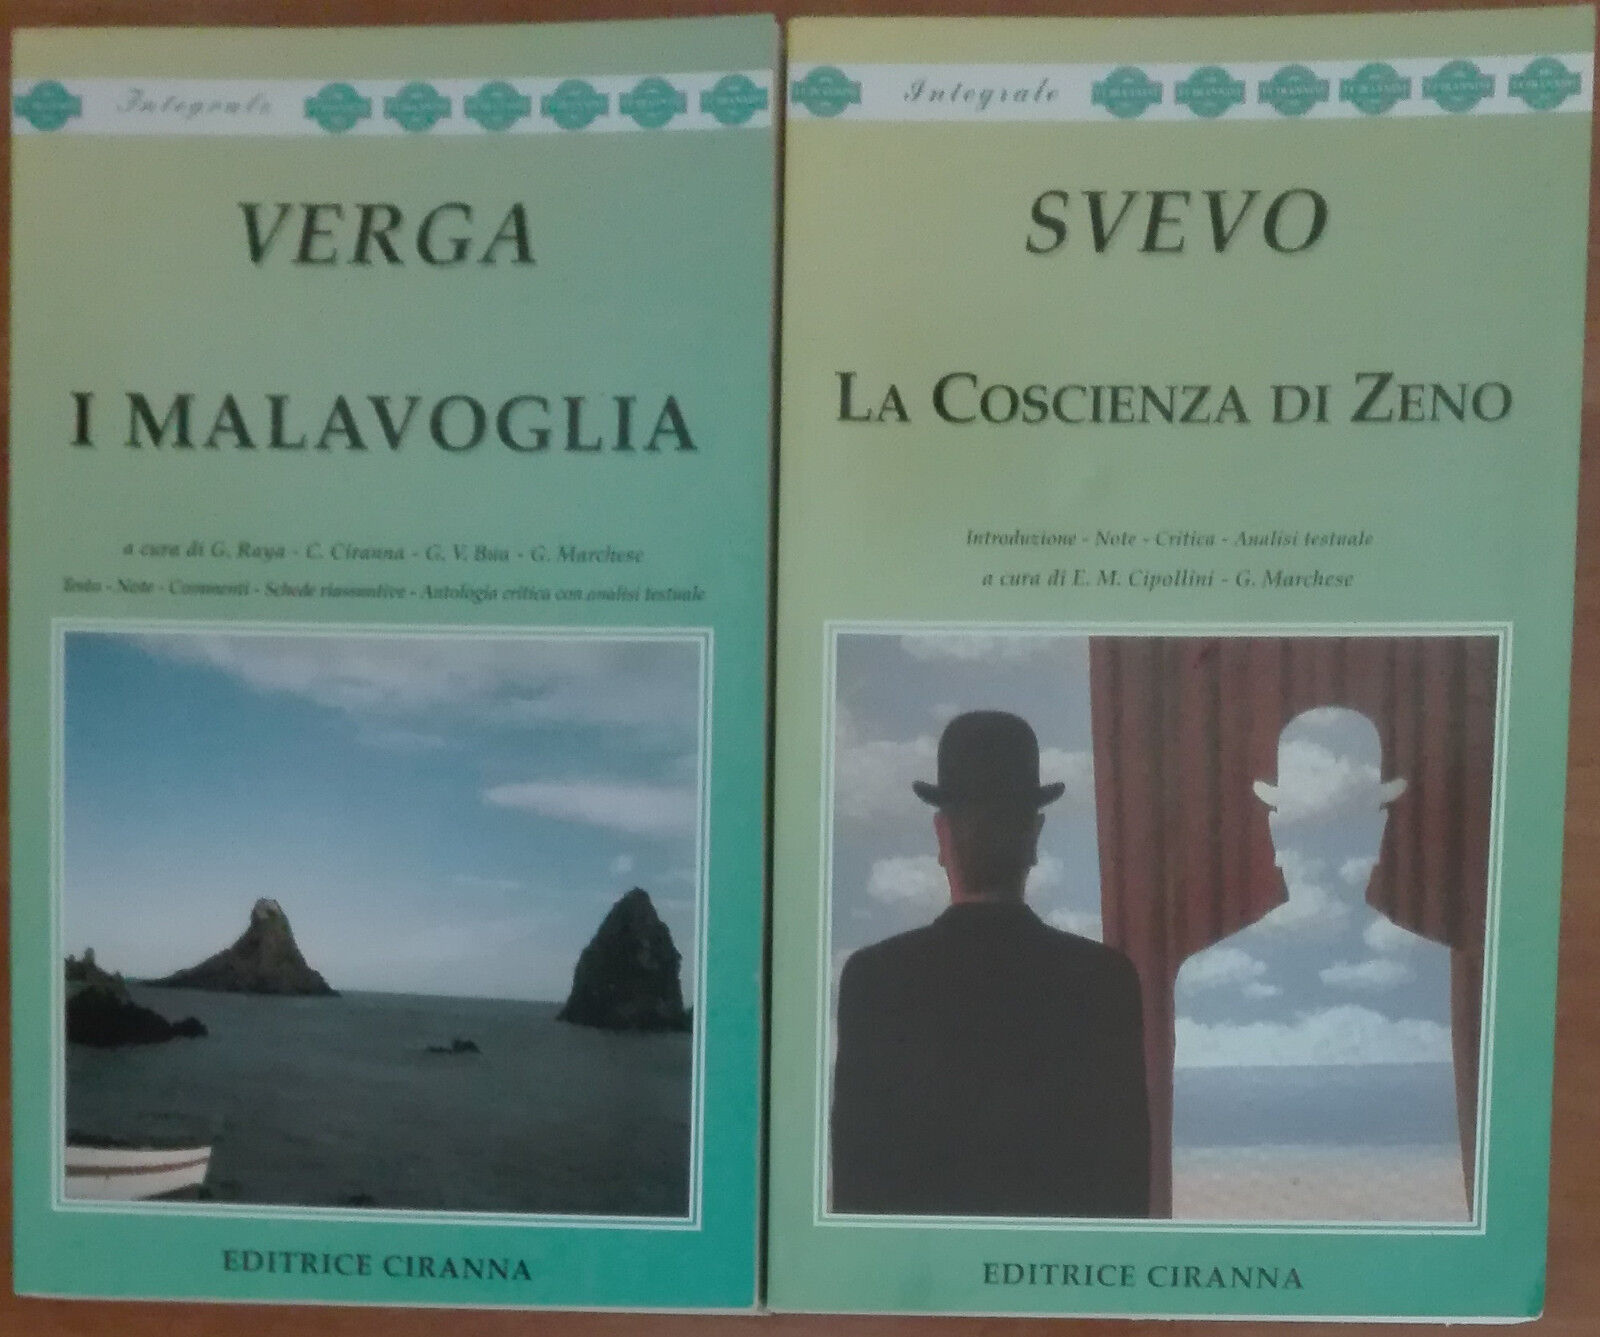 I Malavoglia; La Coscienza di Zeno - Verga, Svevo - Ciranna,2000 - A